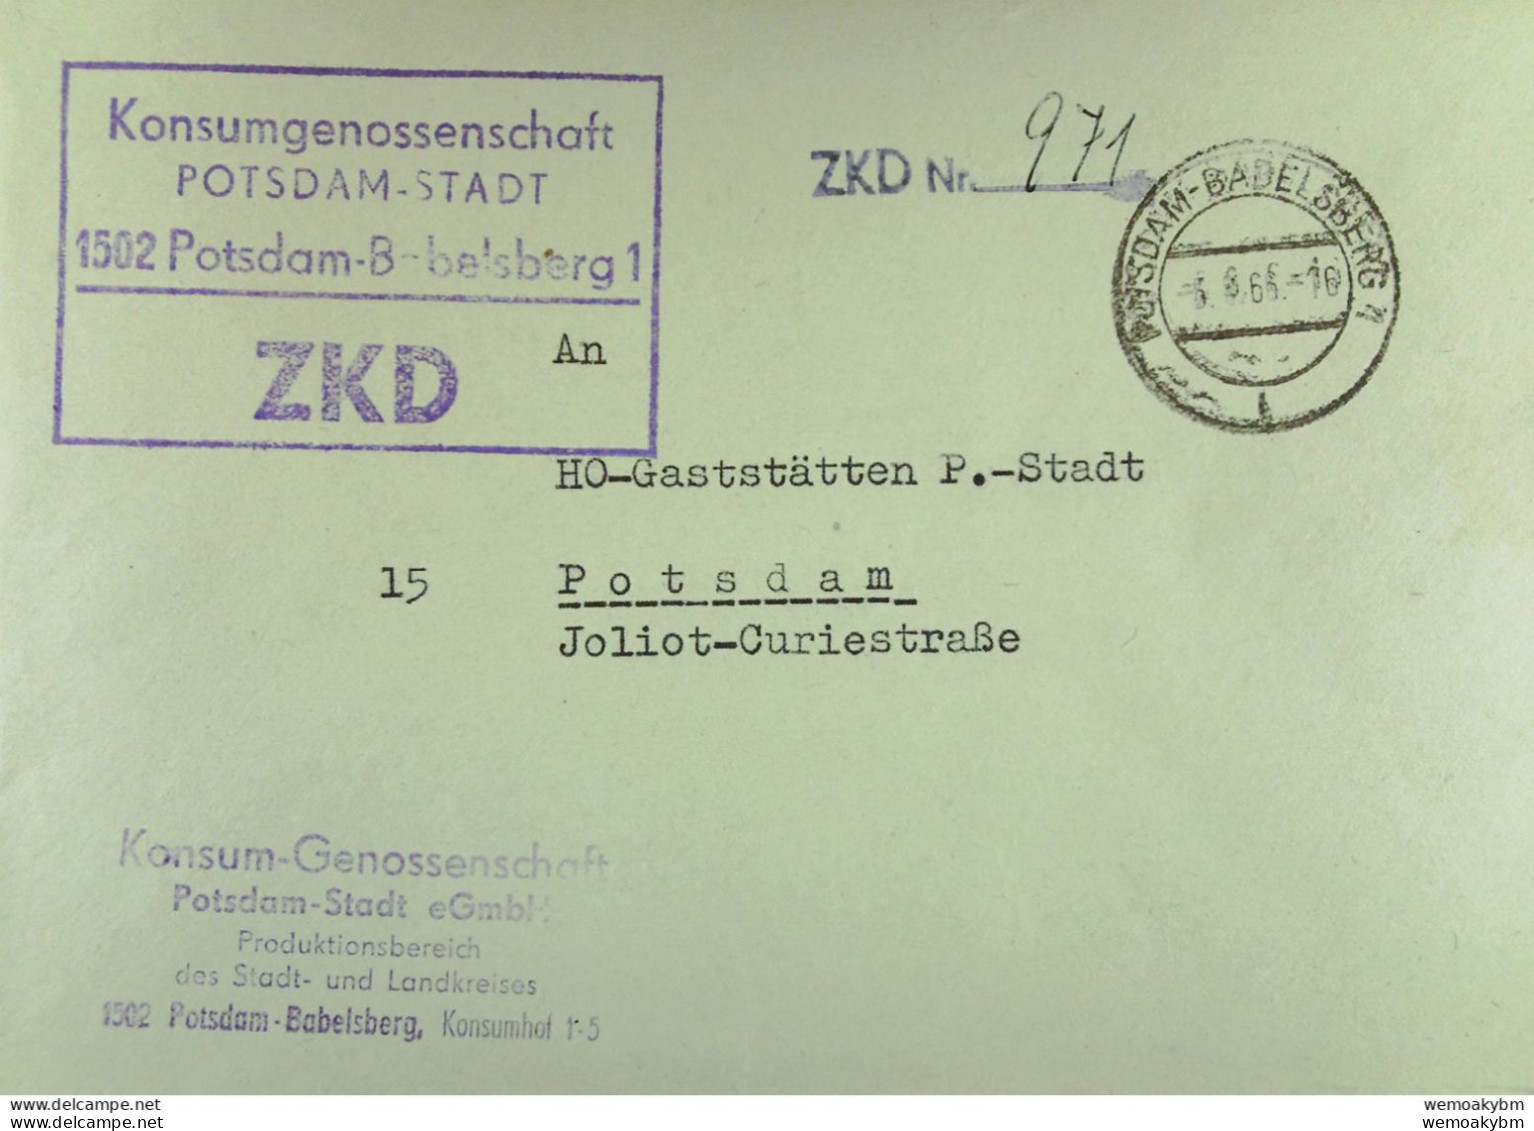 Orts-Brief Mit ZKD-Kastenstpl. "Konsum-Genossenschaft P-Stadt 1502 Potsdam-Babelsberg1" Vom 5.8.66 An HO Potsdam-Stadt - Central Mail Service